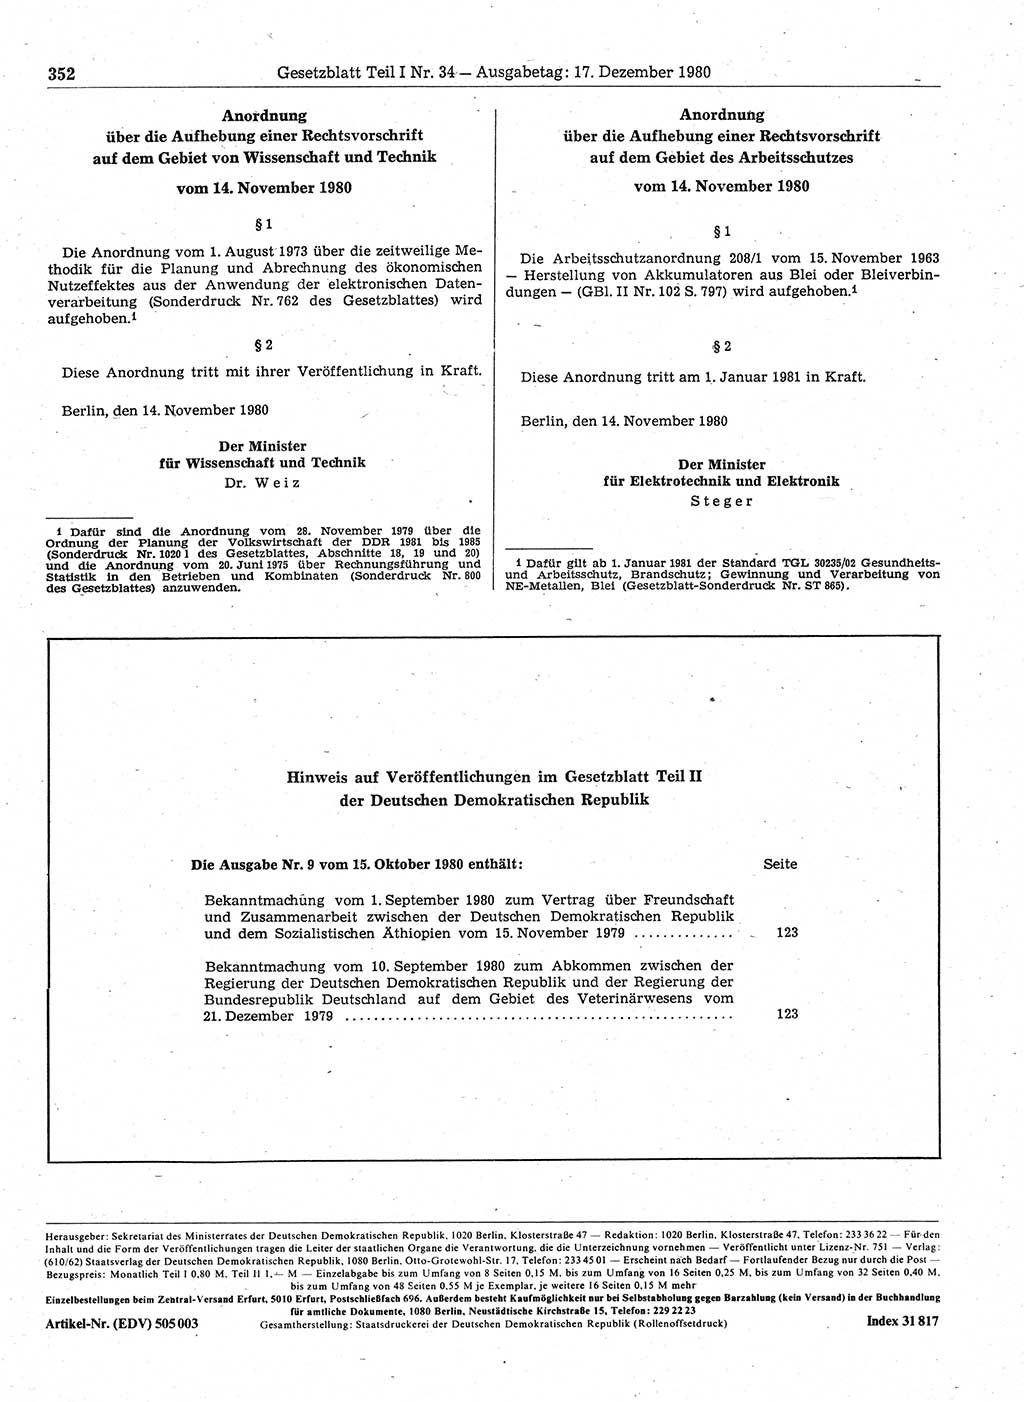 Gesetzblatt (GBl.) der Deutschen Demokratischen Republik (DDR) Teil Ⅰ 1980, Seite 352 (GBl. DDR Ⅰ 1980, S. 352)